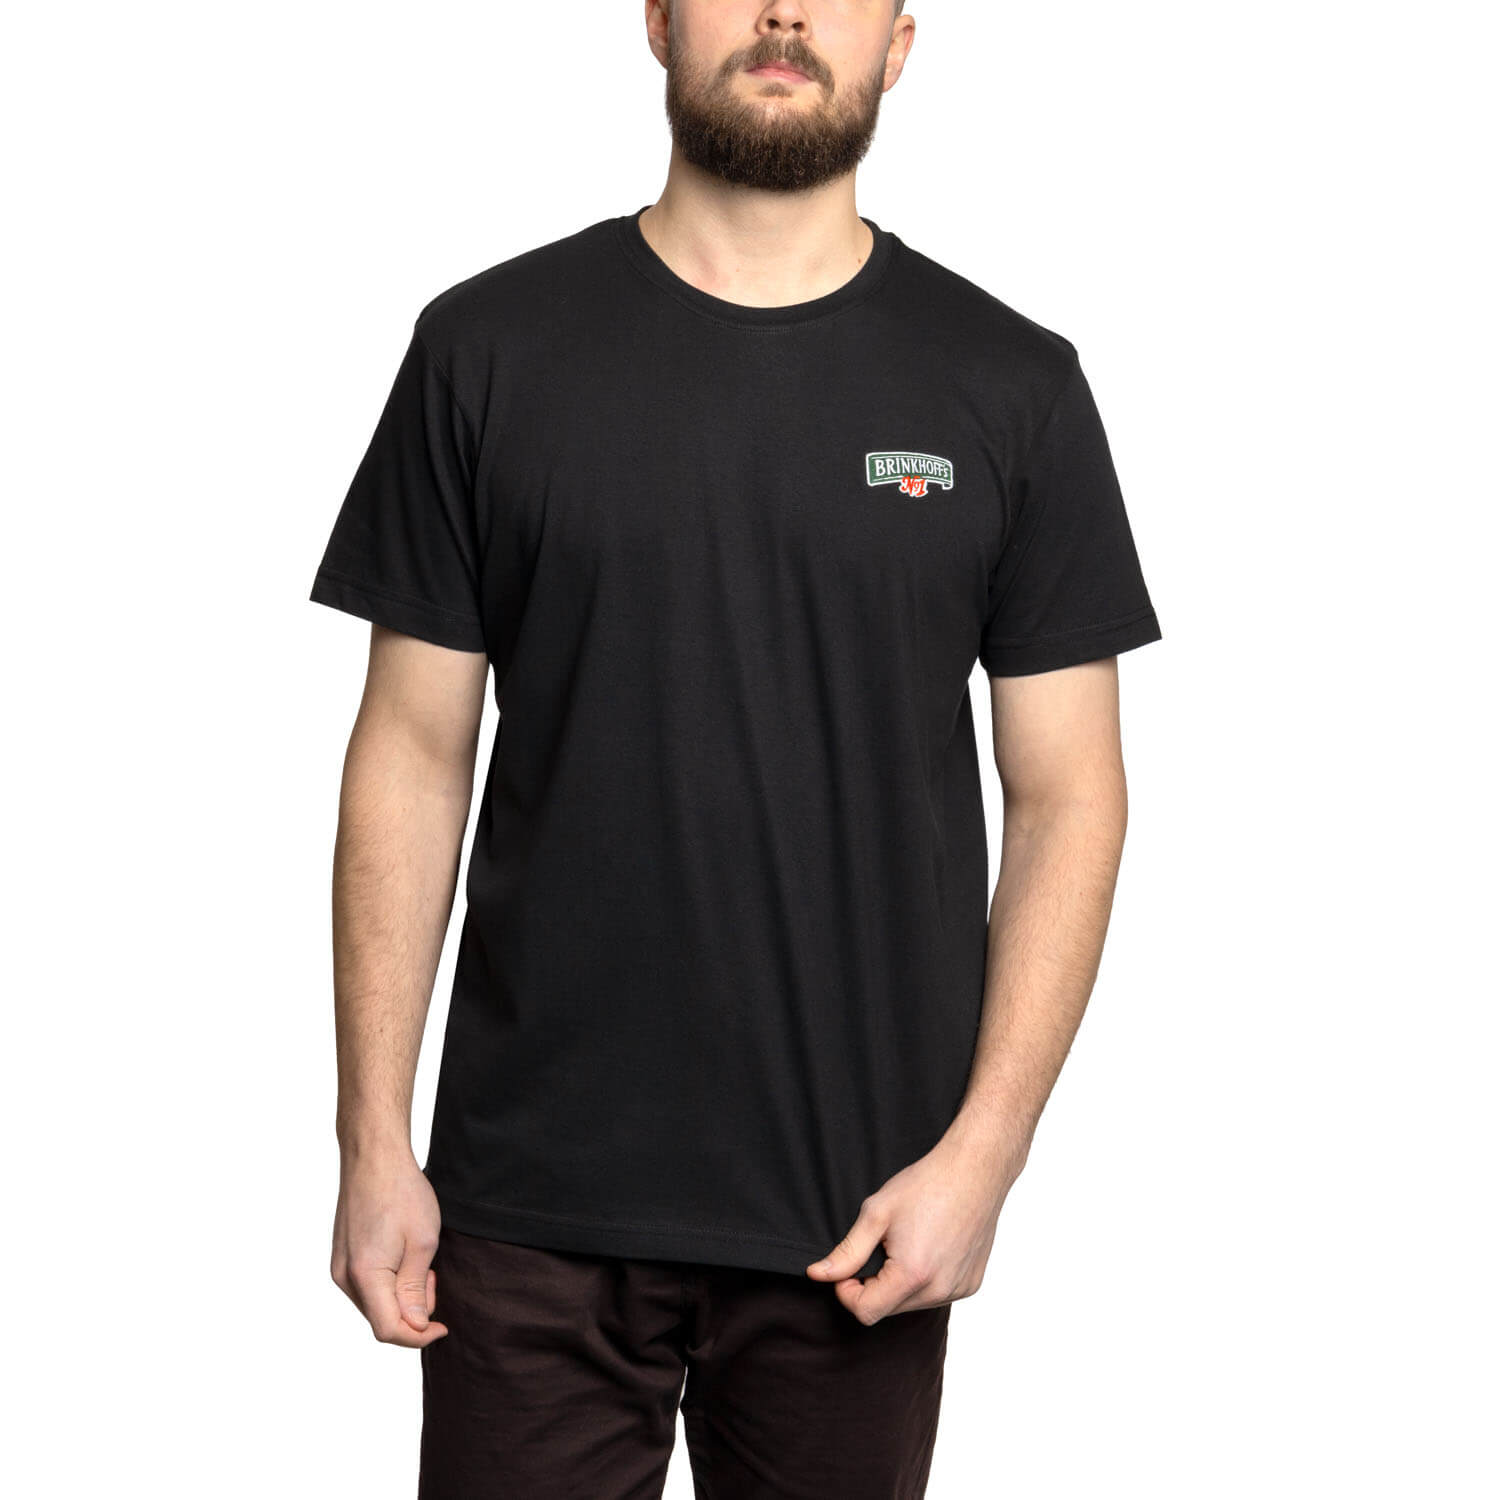 Brinkhoff's T-Shirt Essential schwarz, Gr.  M